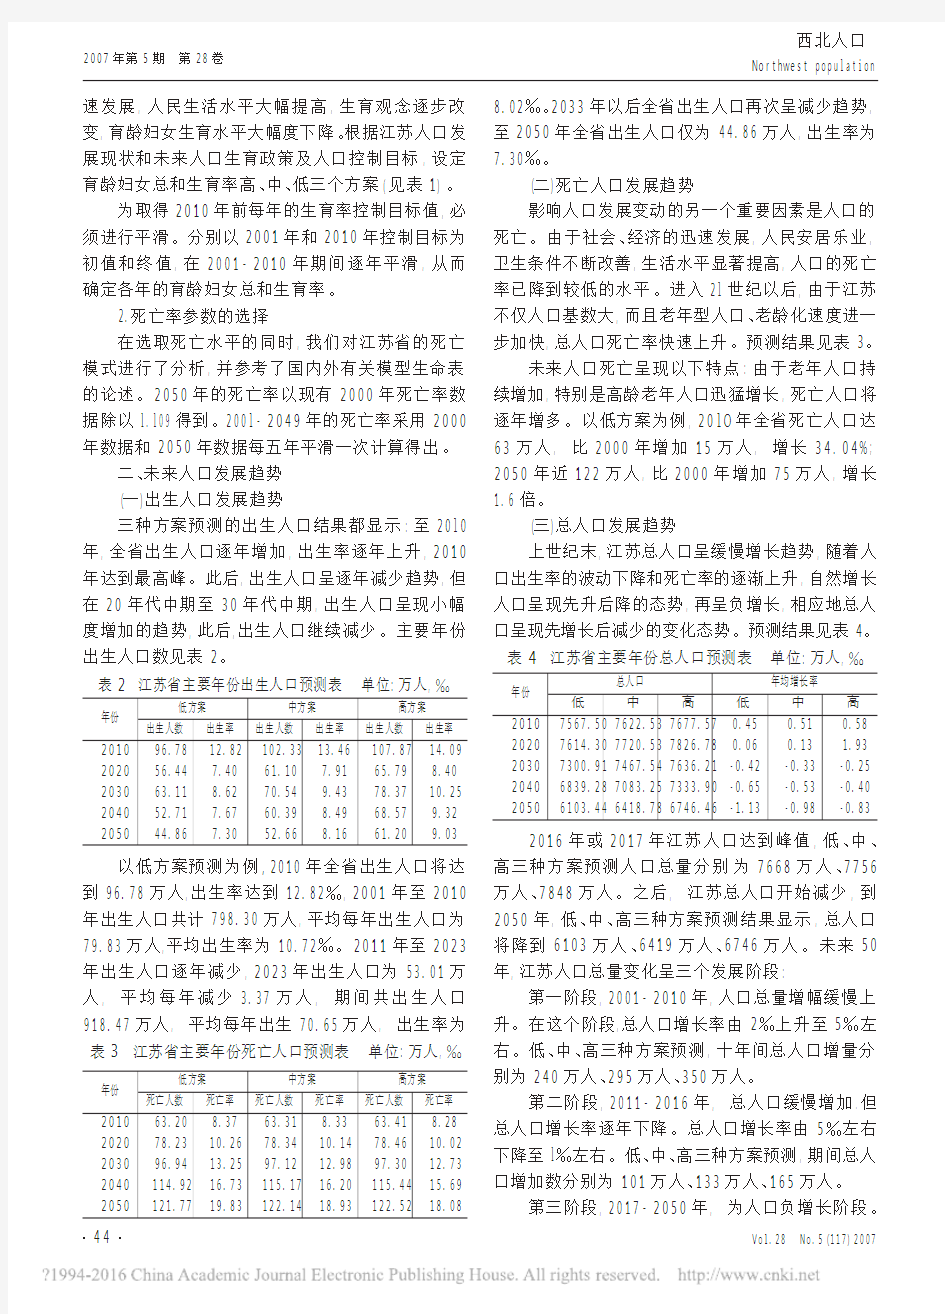 江苏省人口发展趋势预测